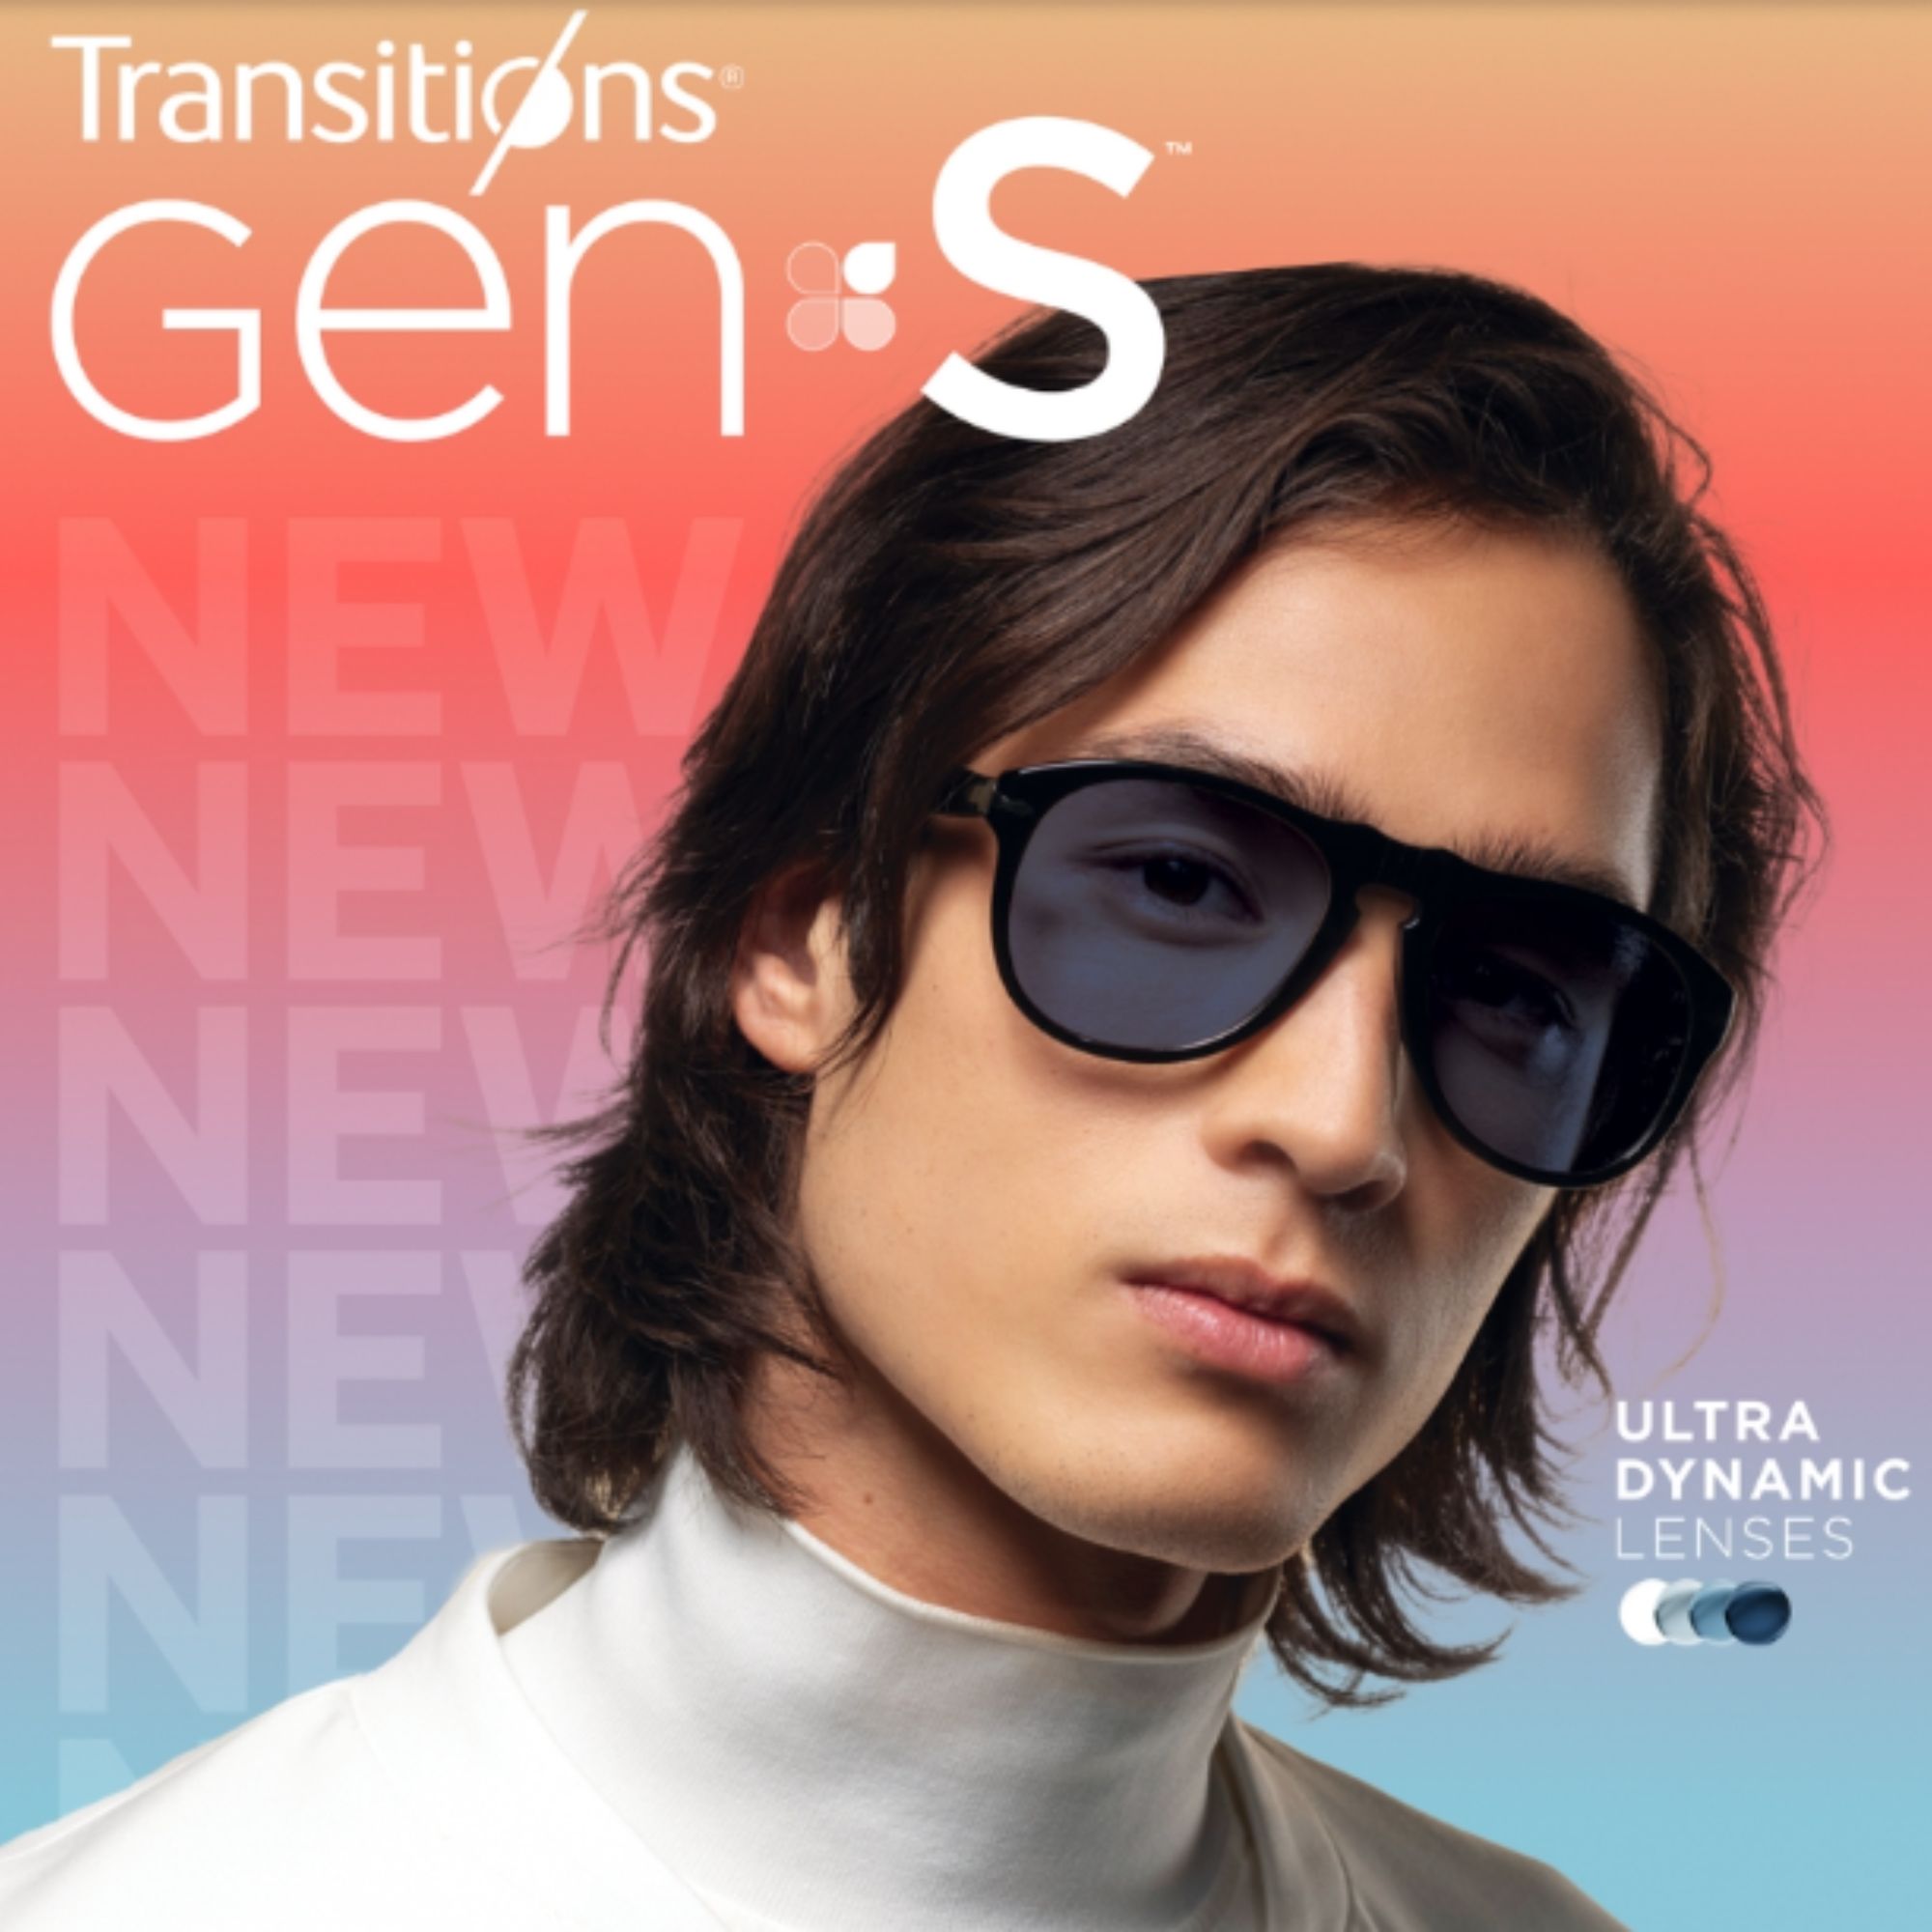 Lentes Transitions GENS: gafas fotosensibles, ultradinámicas y en diversos estilos; dónde se pueden comprar y en qué colores están disponibles.